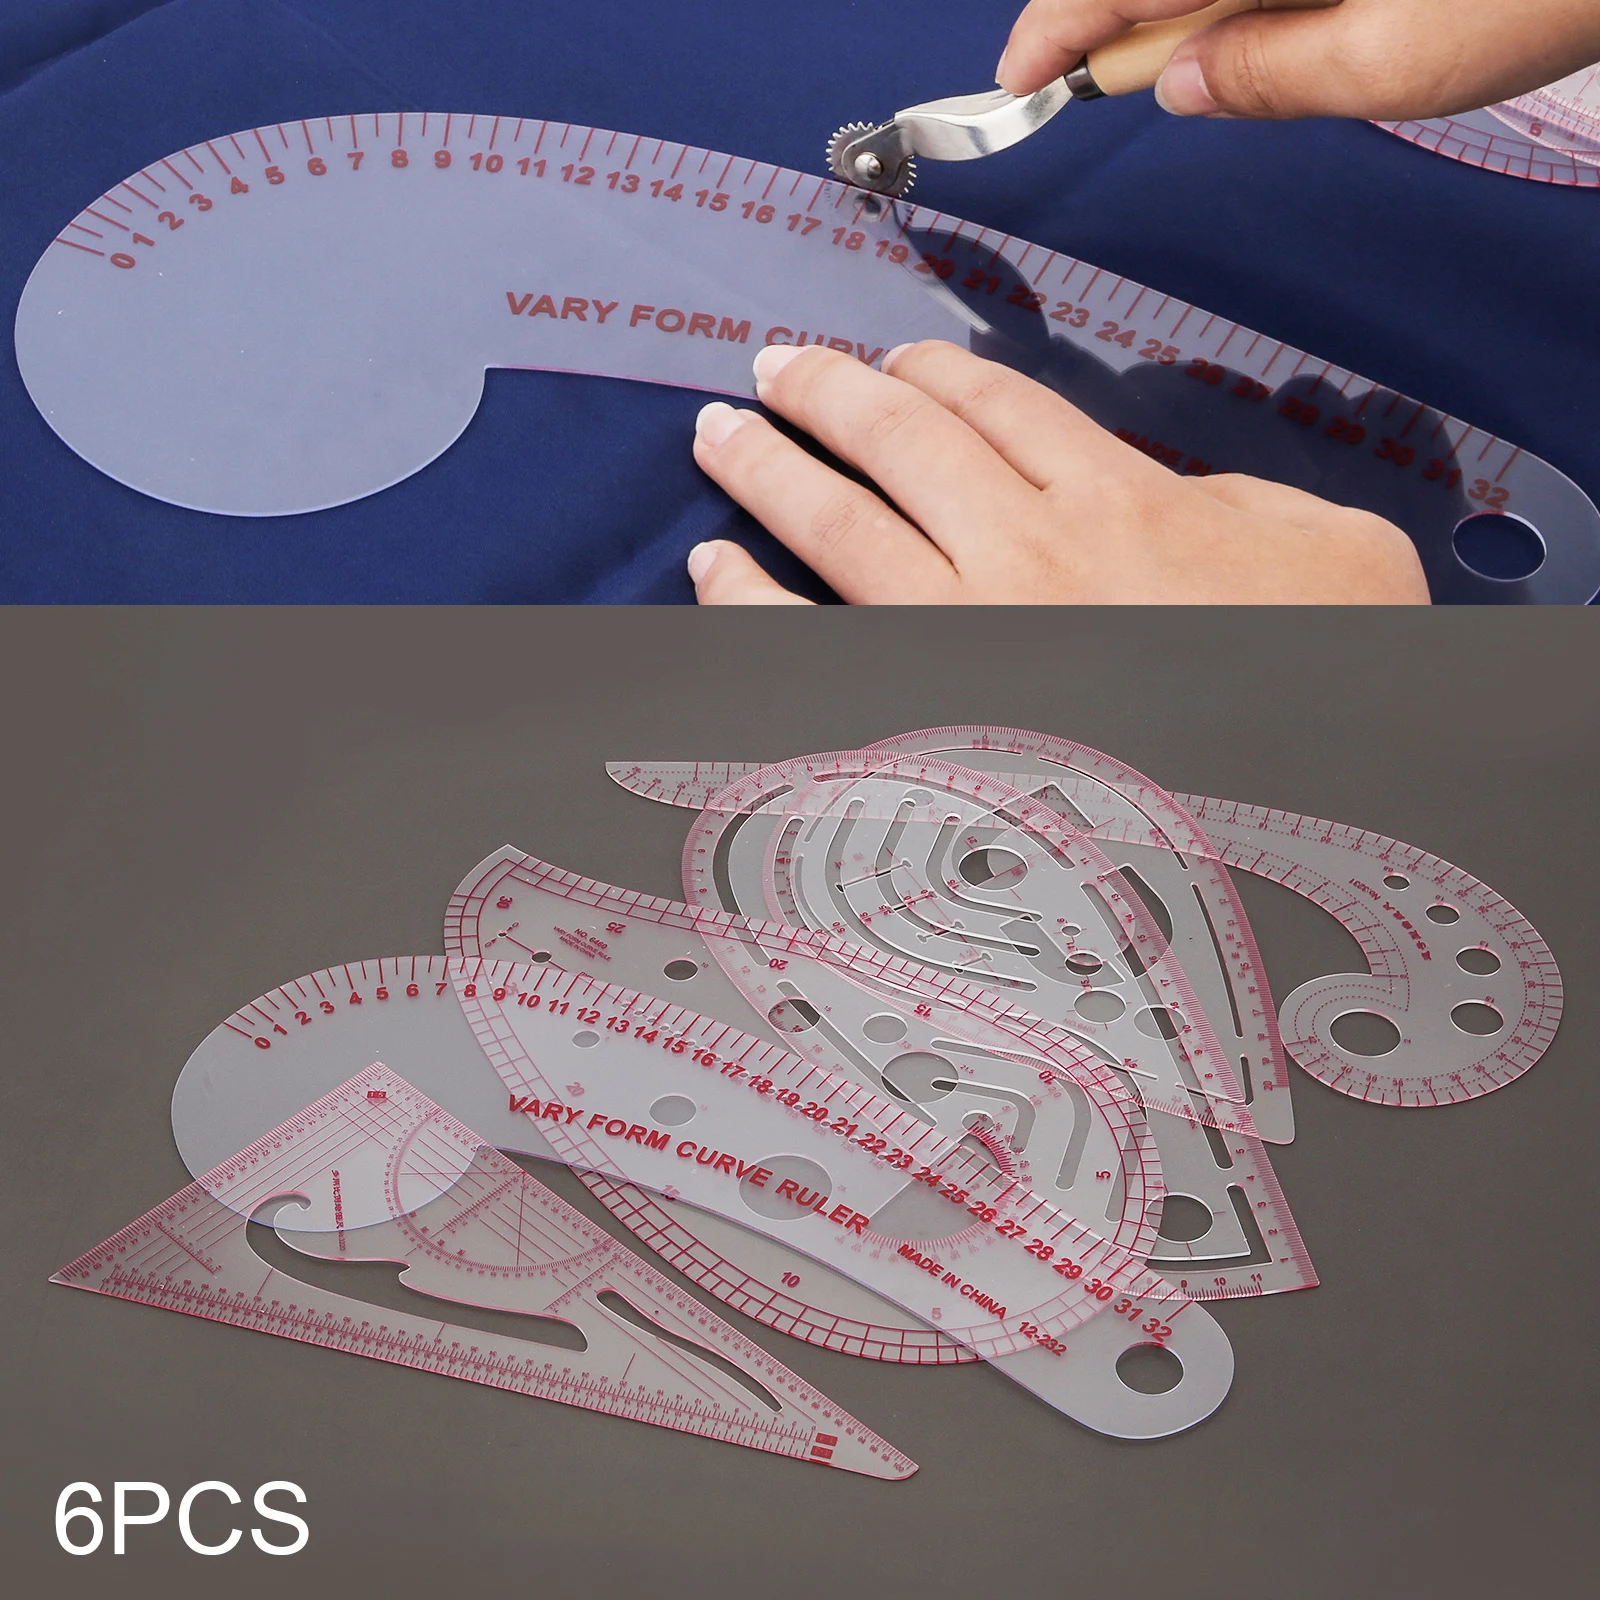 

6 видов пришивания метрические инструменты для шитья измерительная линейка для шитья шаблон для изготовления узоров сделай сам для платья одежды гибкий шаблон для рисования